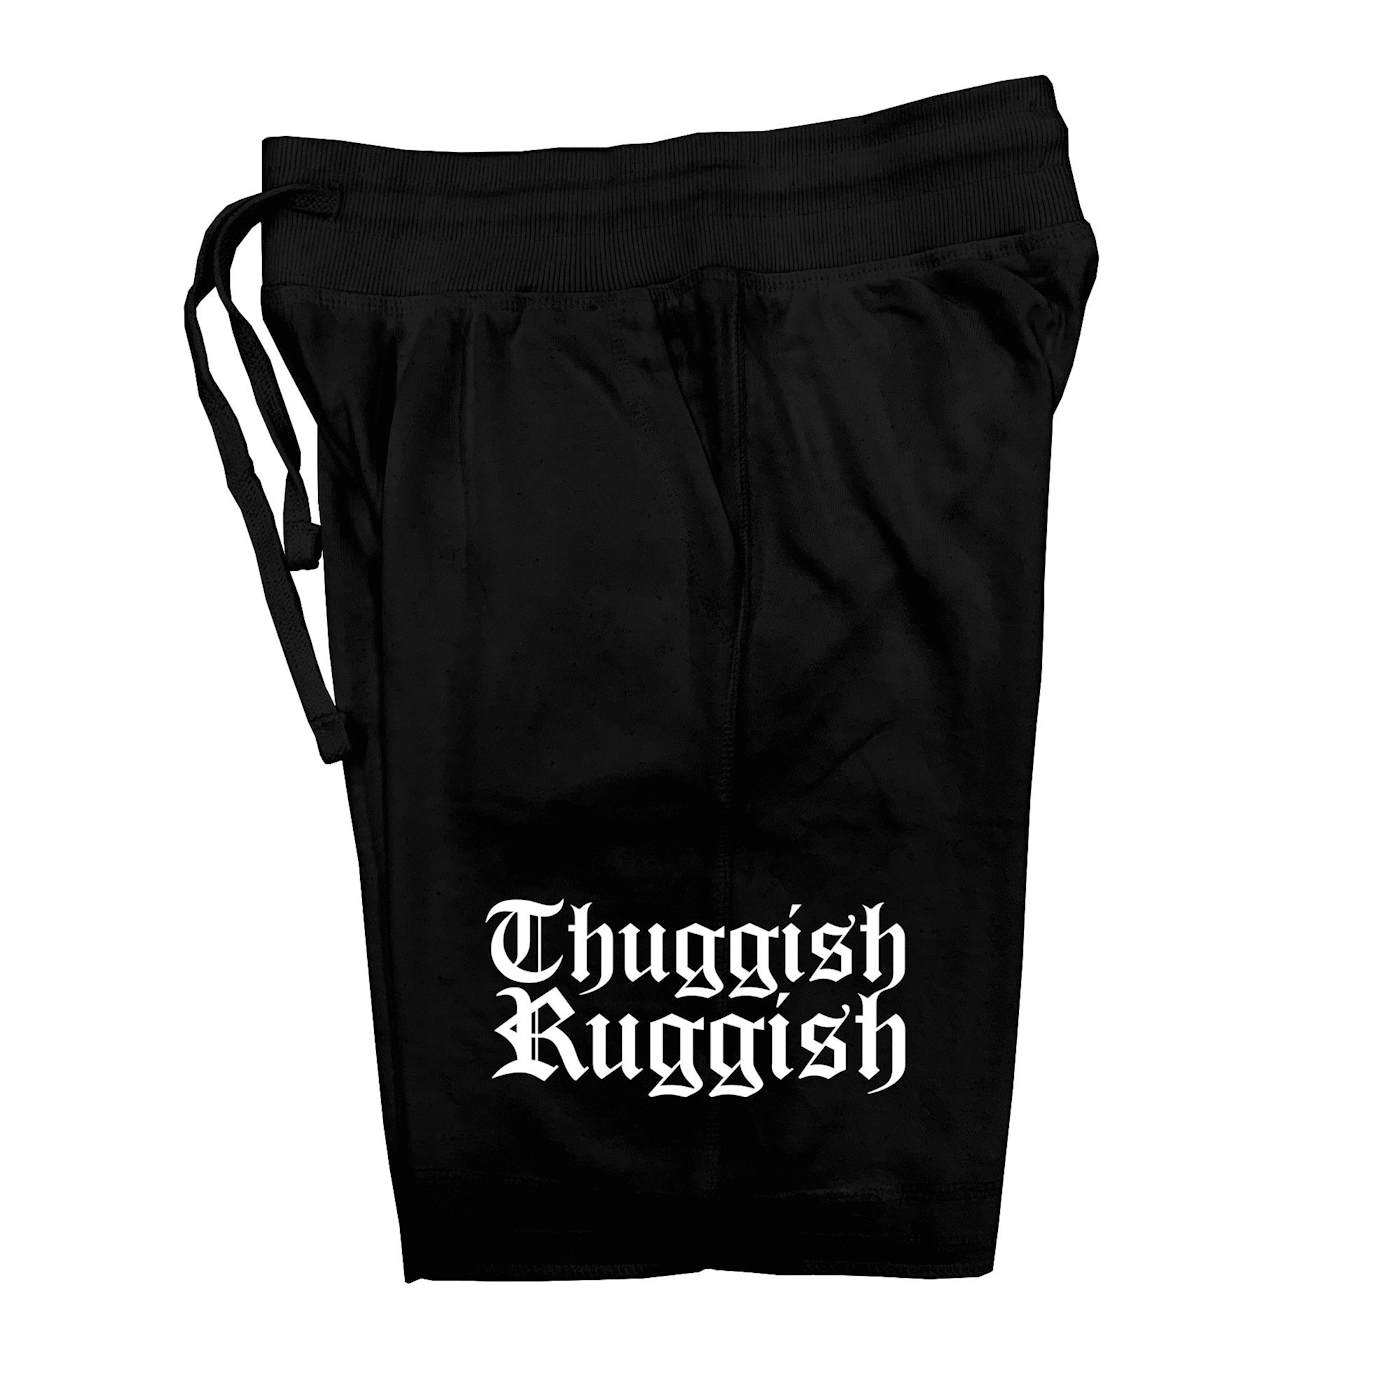 Bone Thugs-N-Harmony Thuggish Ruggish Alumni Shorts